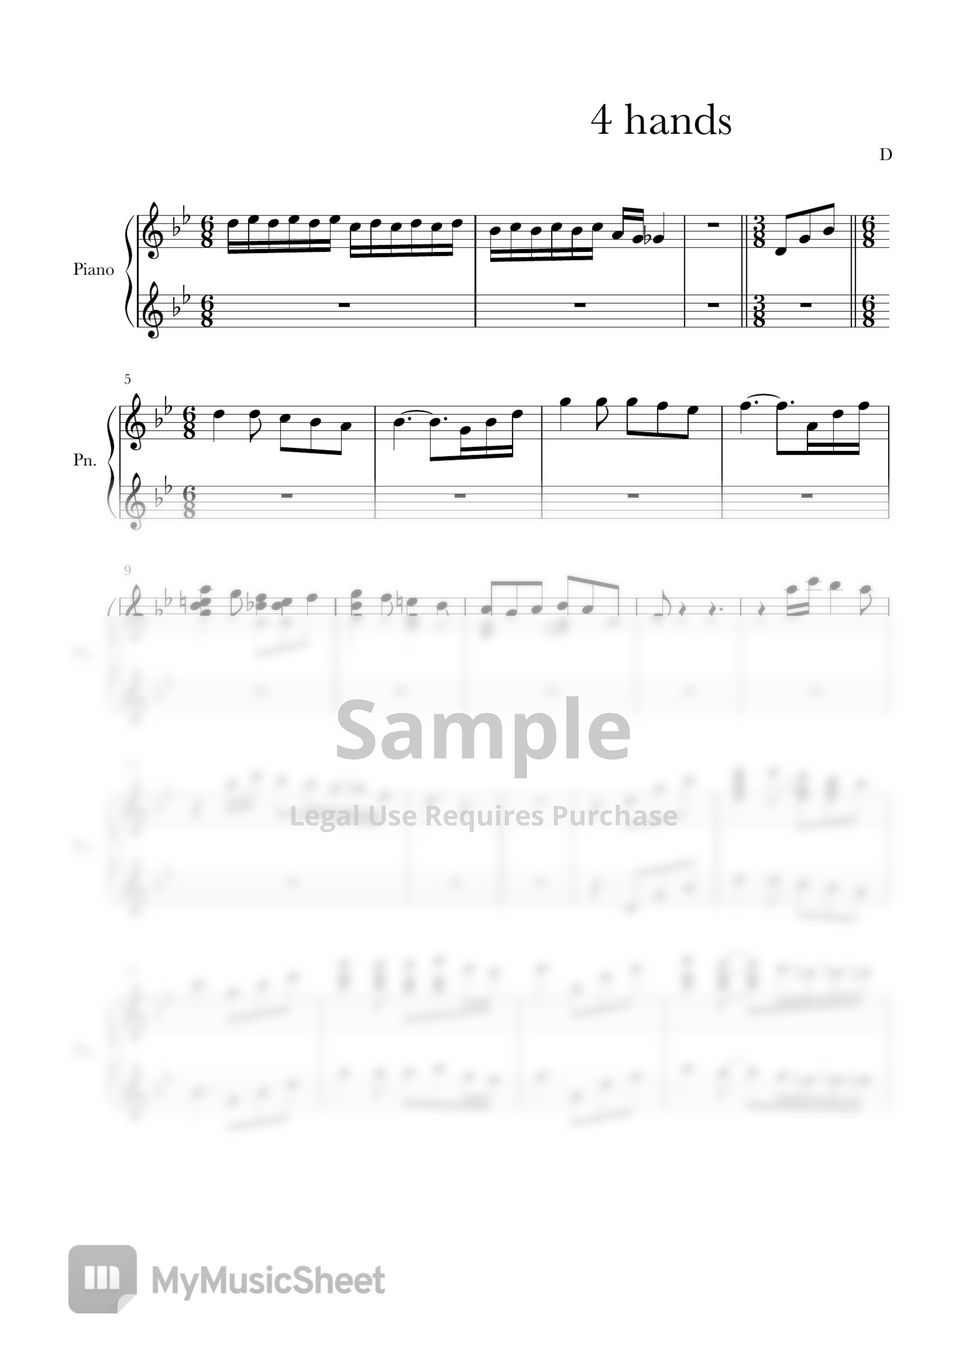 히사이시 조 - 인생의 회전목마 (하울의 움직이는 성 OST) (4 hands ver. of orchestra) by 악보 그리는 D